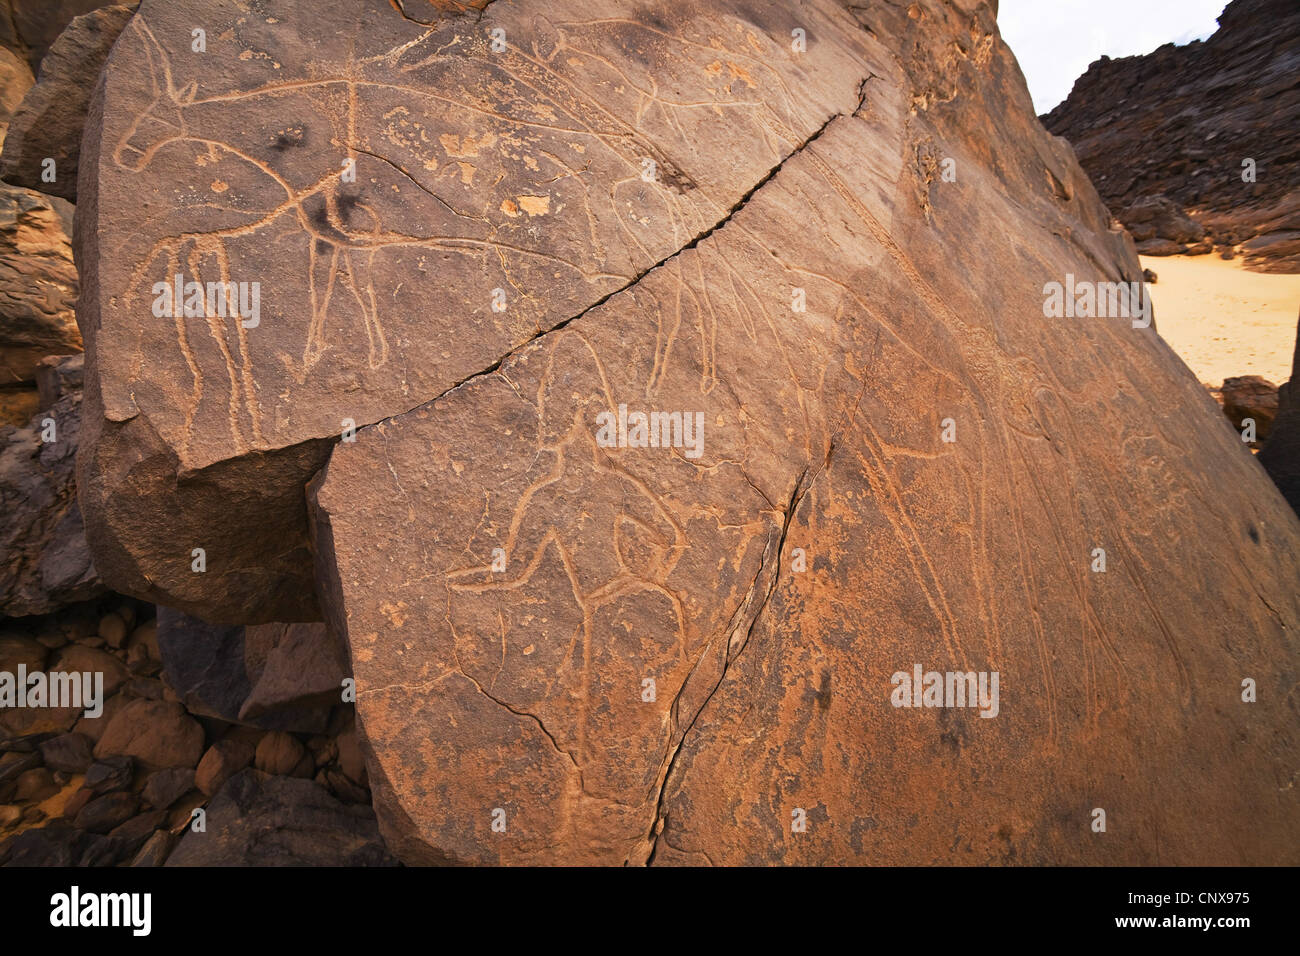 rock engravings in the stone desert Tassili Maridet, Libya Stock Photo